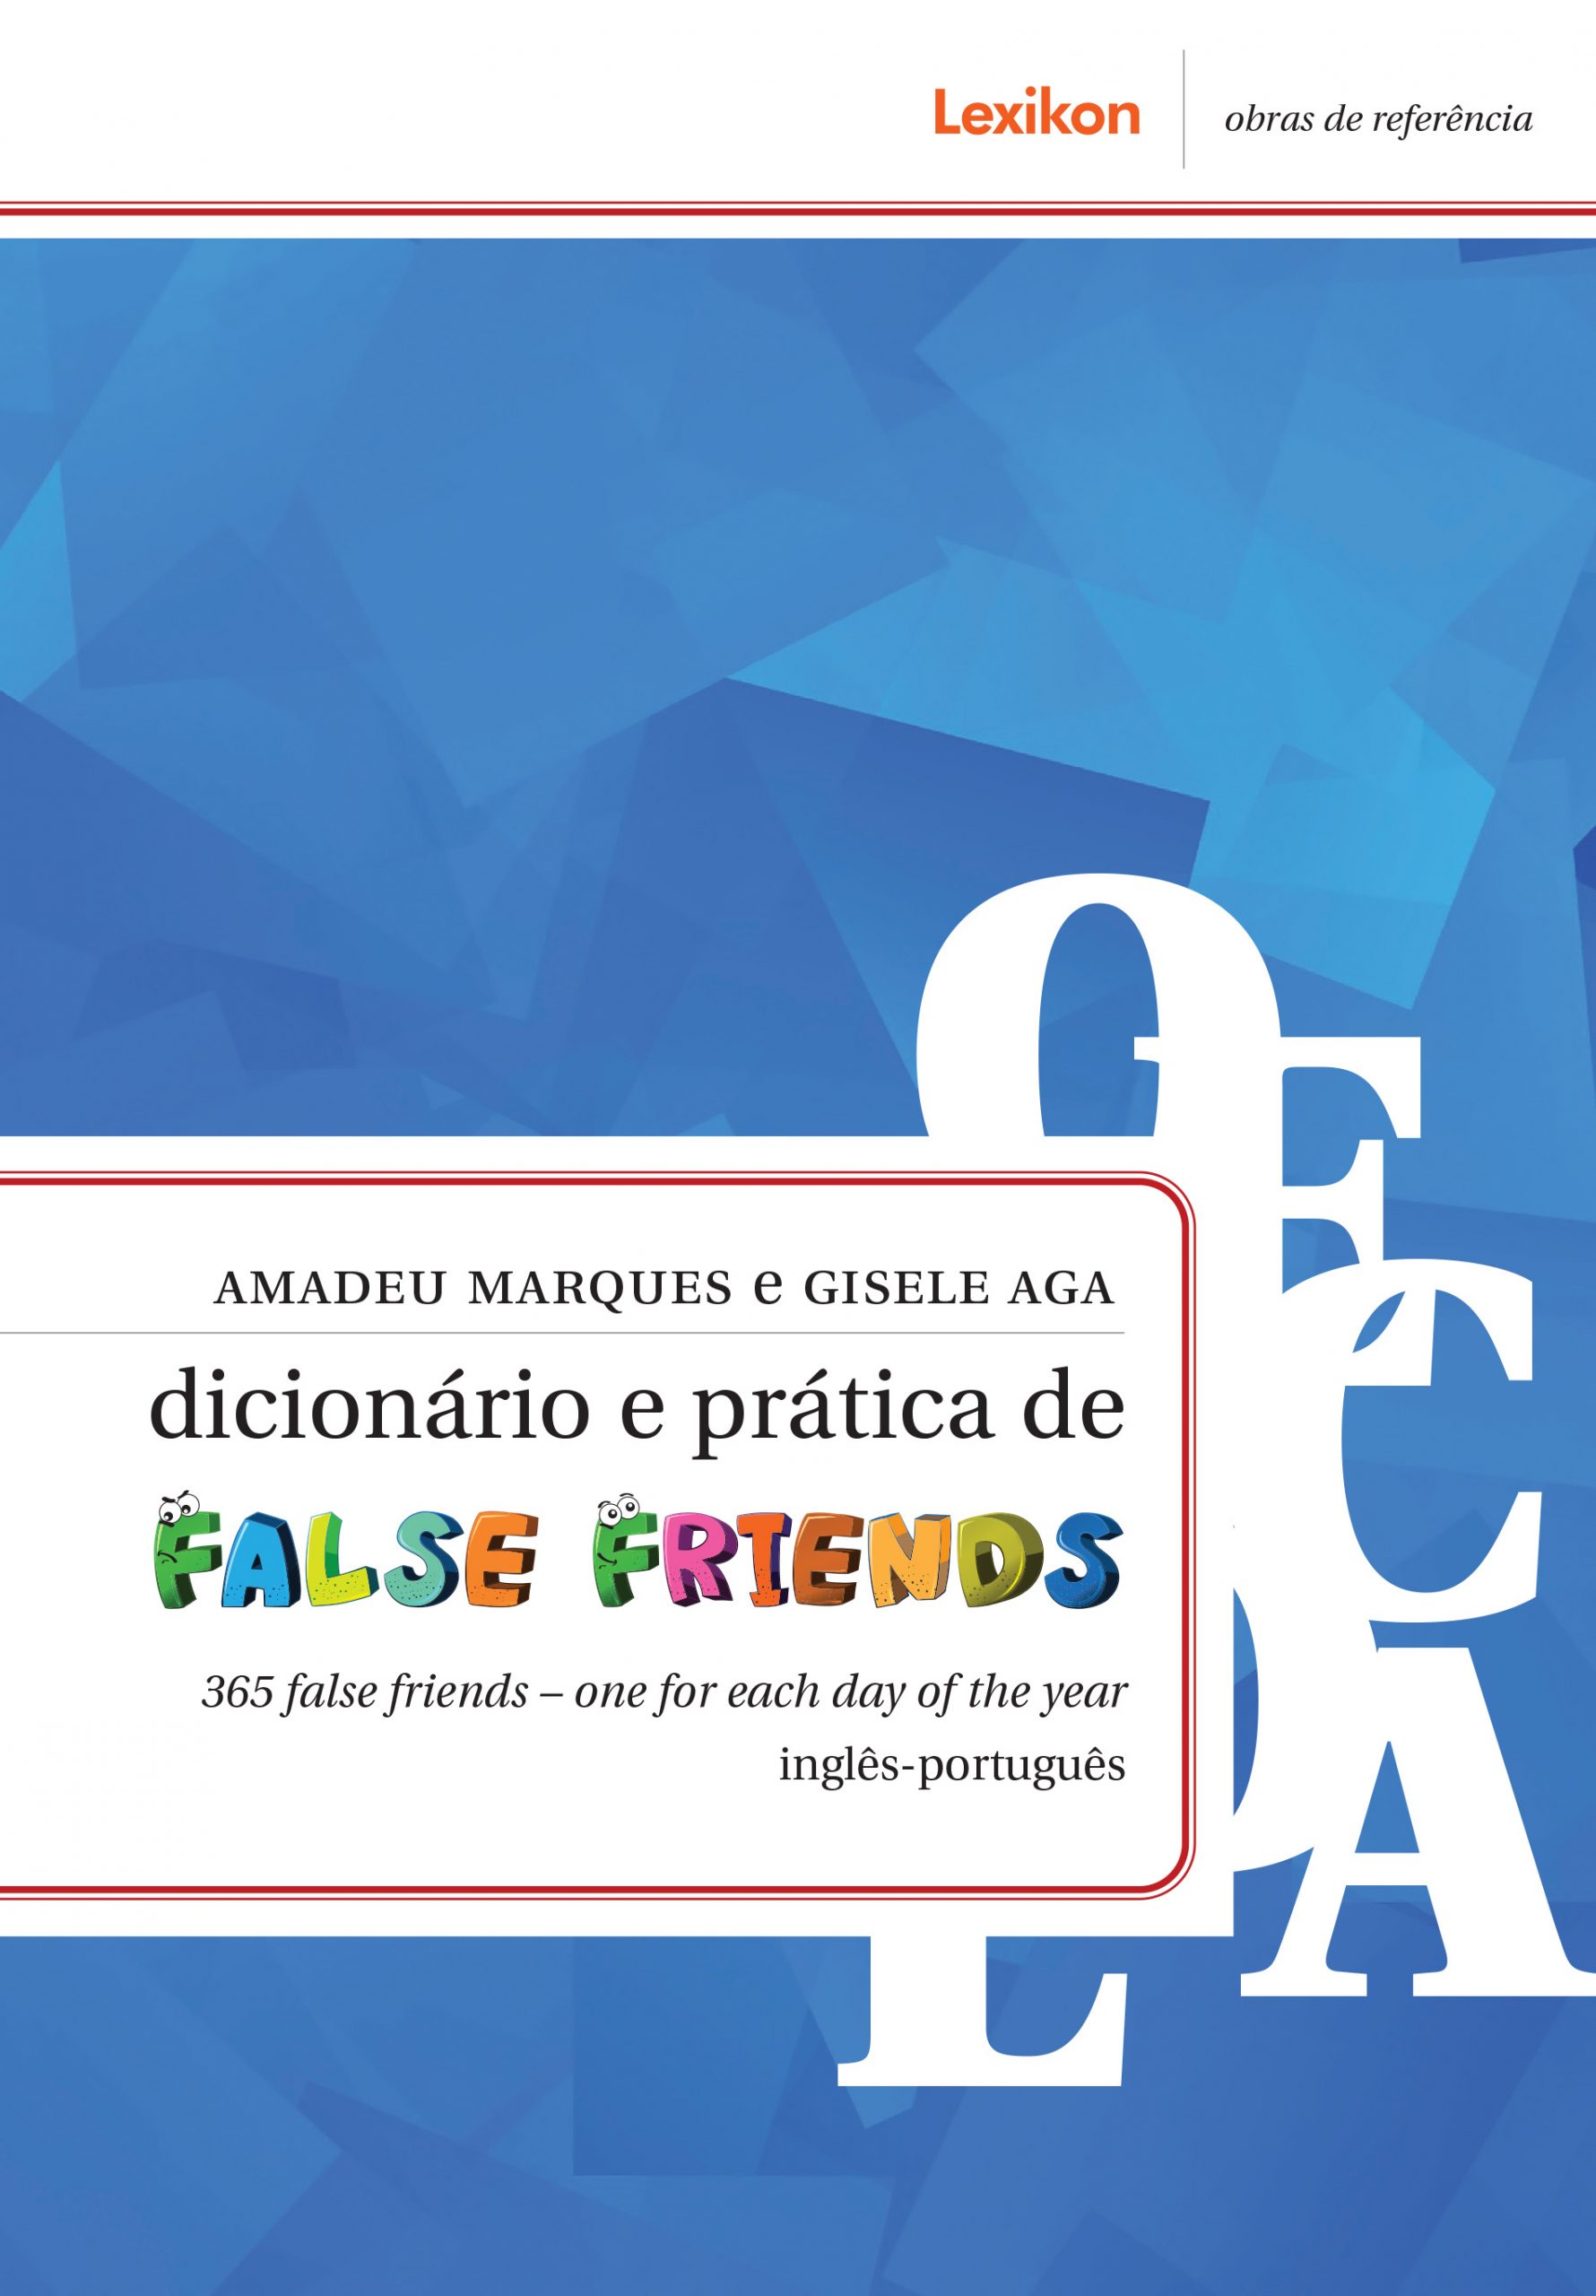 Dicionário e prática false friends